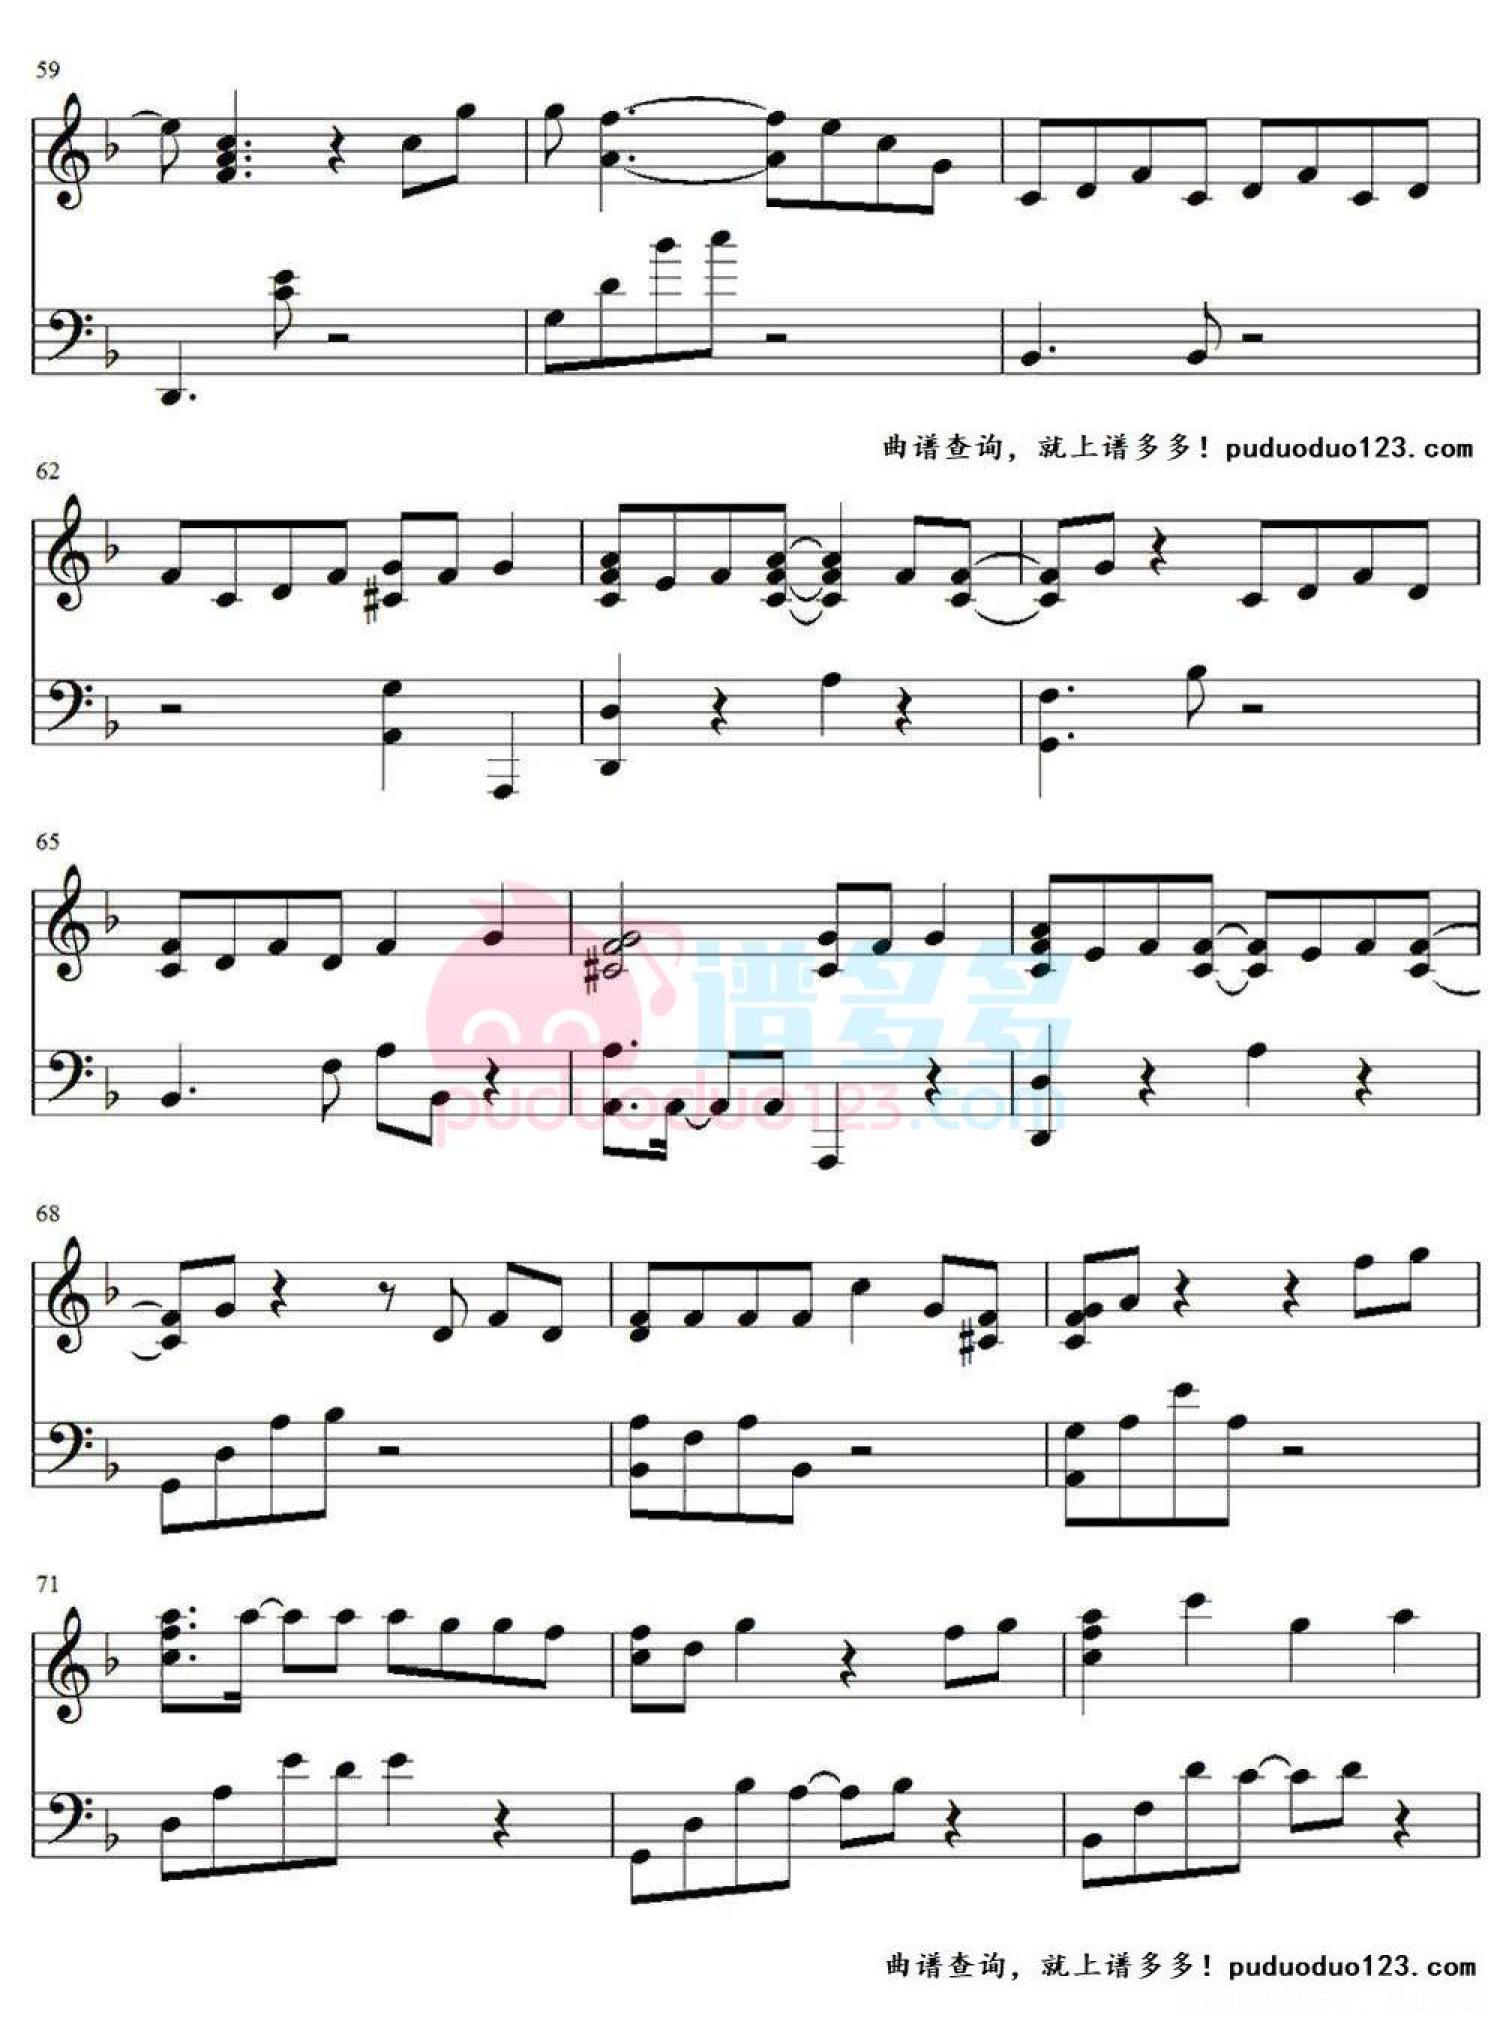 EXO《人鱼的眼泪》钢琴谱 - 钢琴五线谱 - 弹琴谱